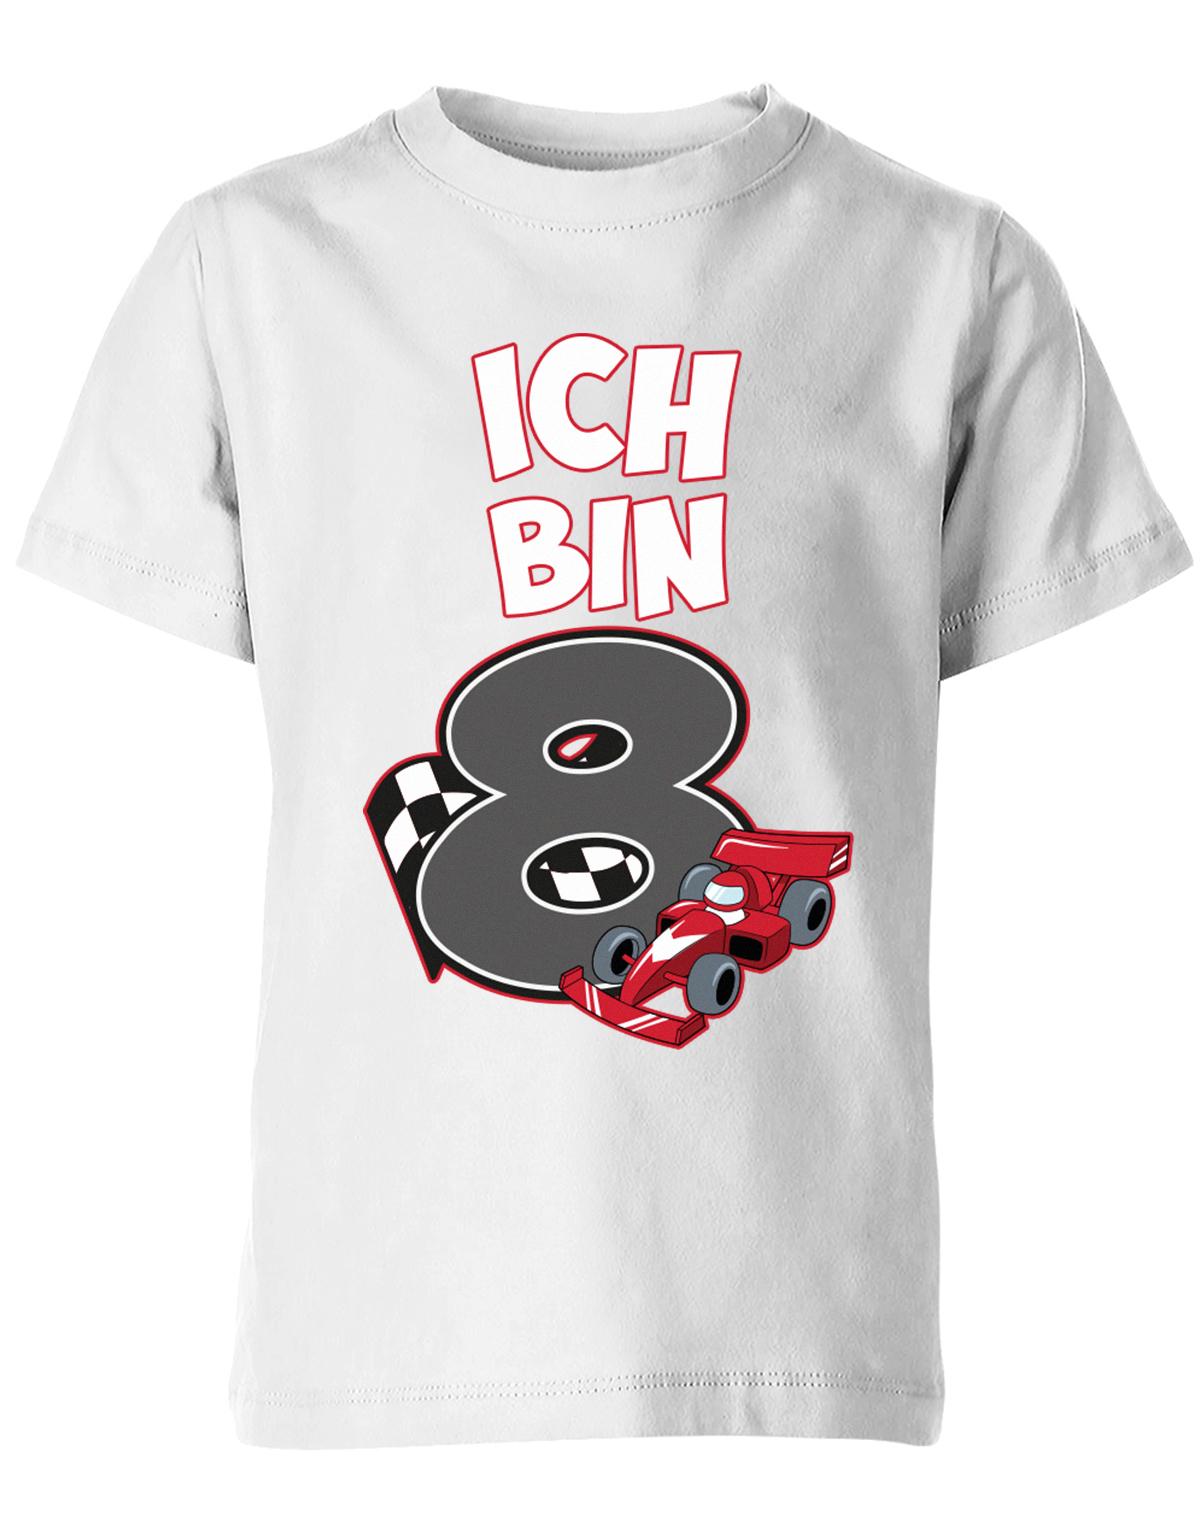 ich-bin-8-autorennen-rennwagen-geburtstag-rennfahrer-kinder-shirt-weiss